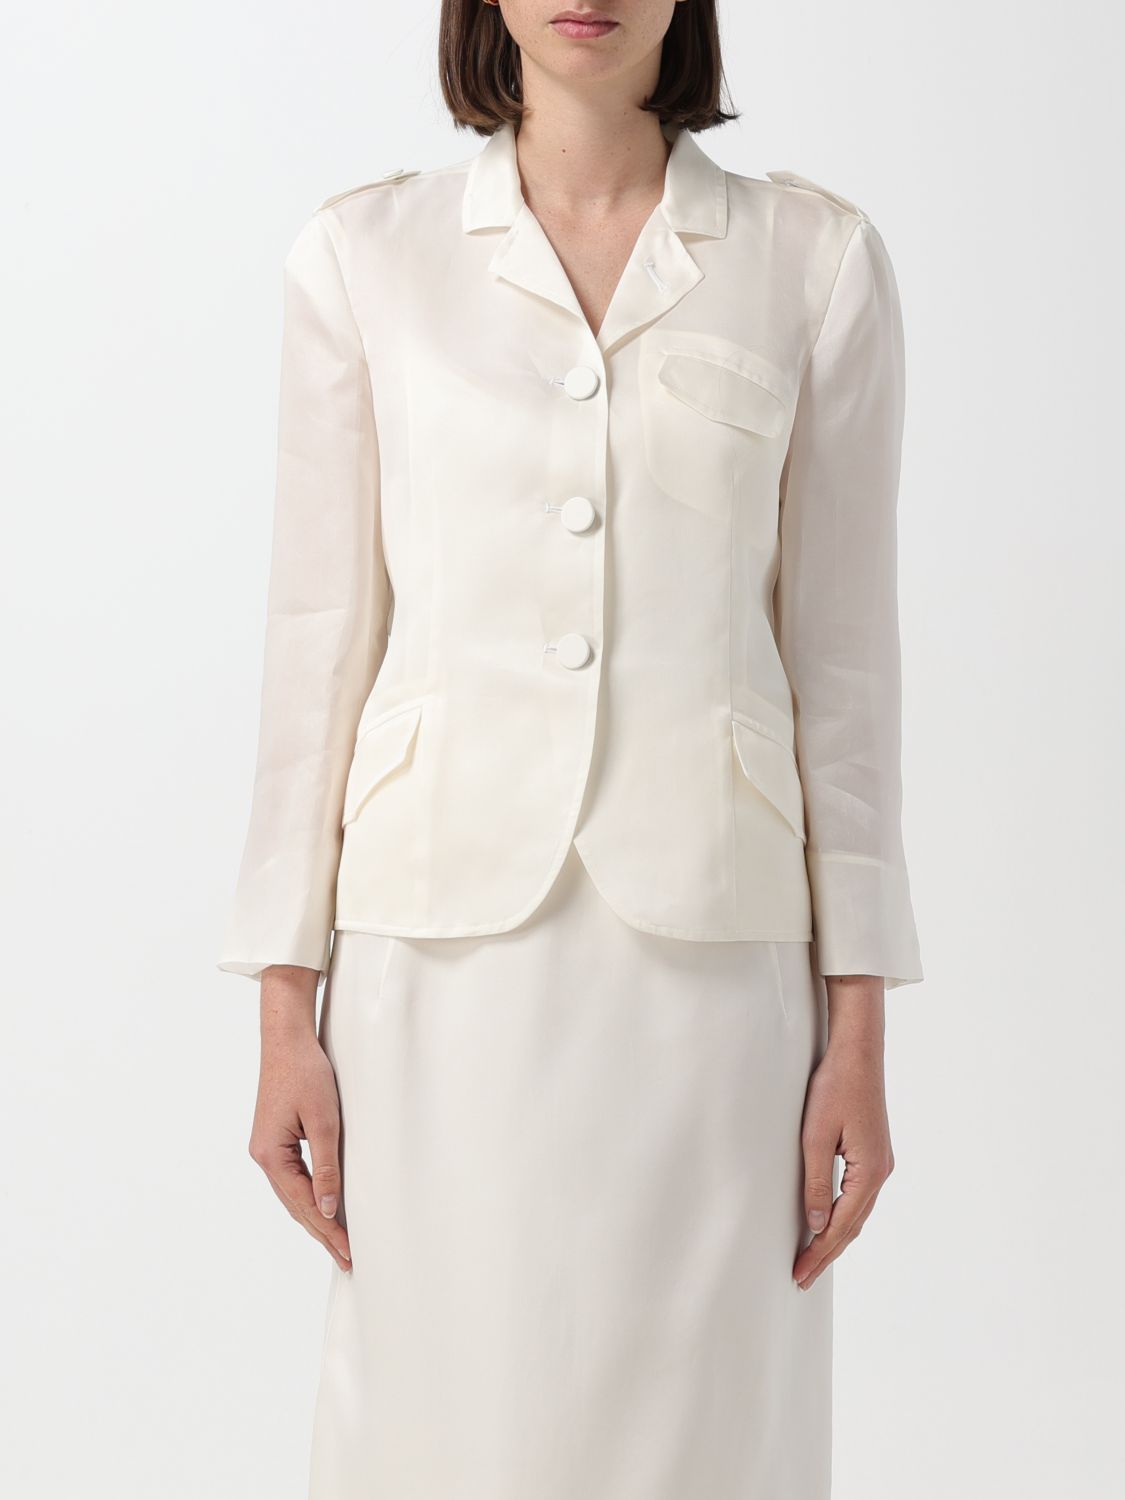 N° 21 Jacket N° 21 Woman color White